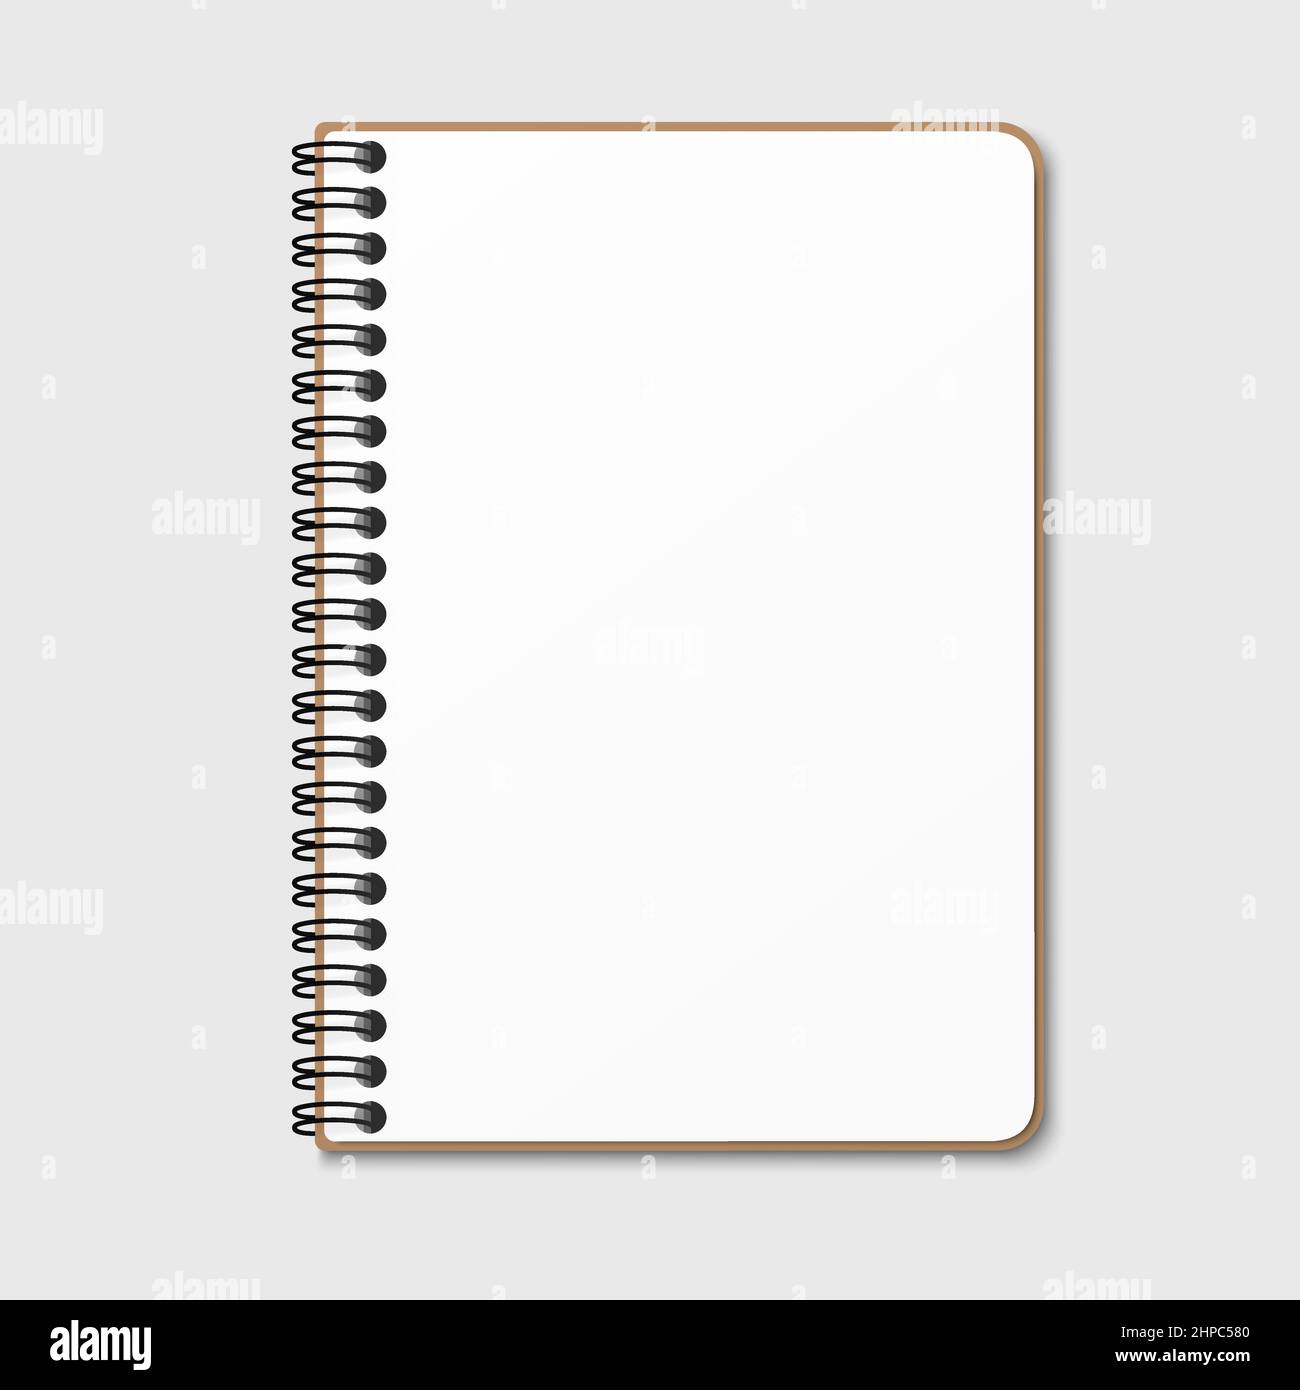 Sample Art Spiral Notebook